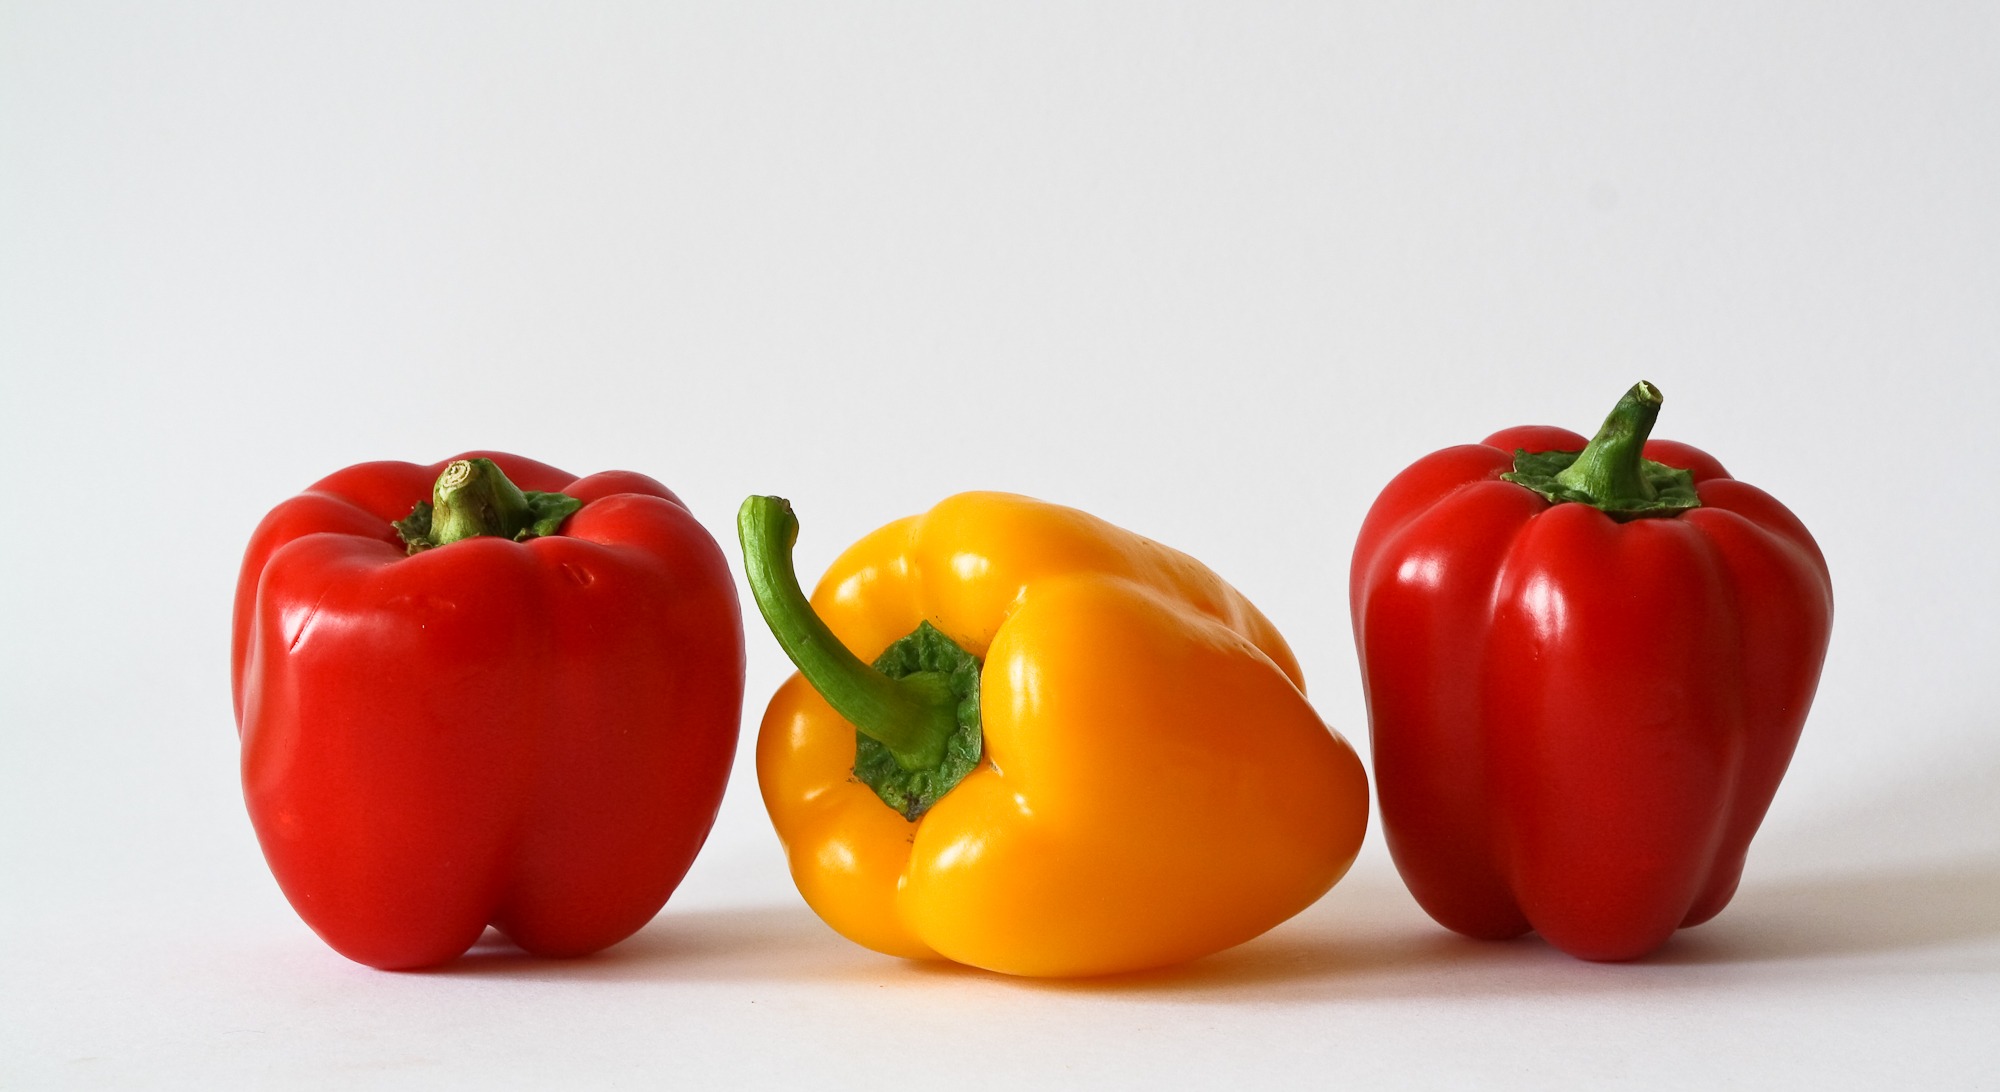 paprika-vegetables-colorful-food-57426